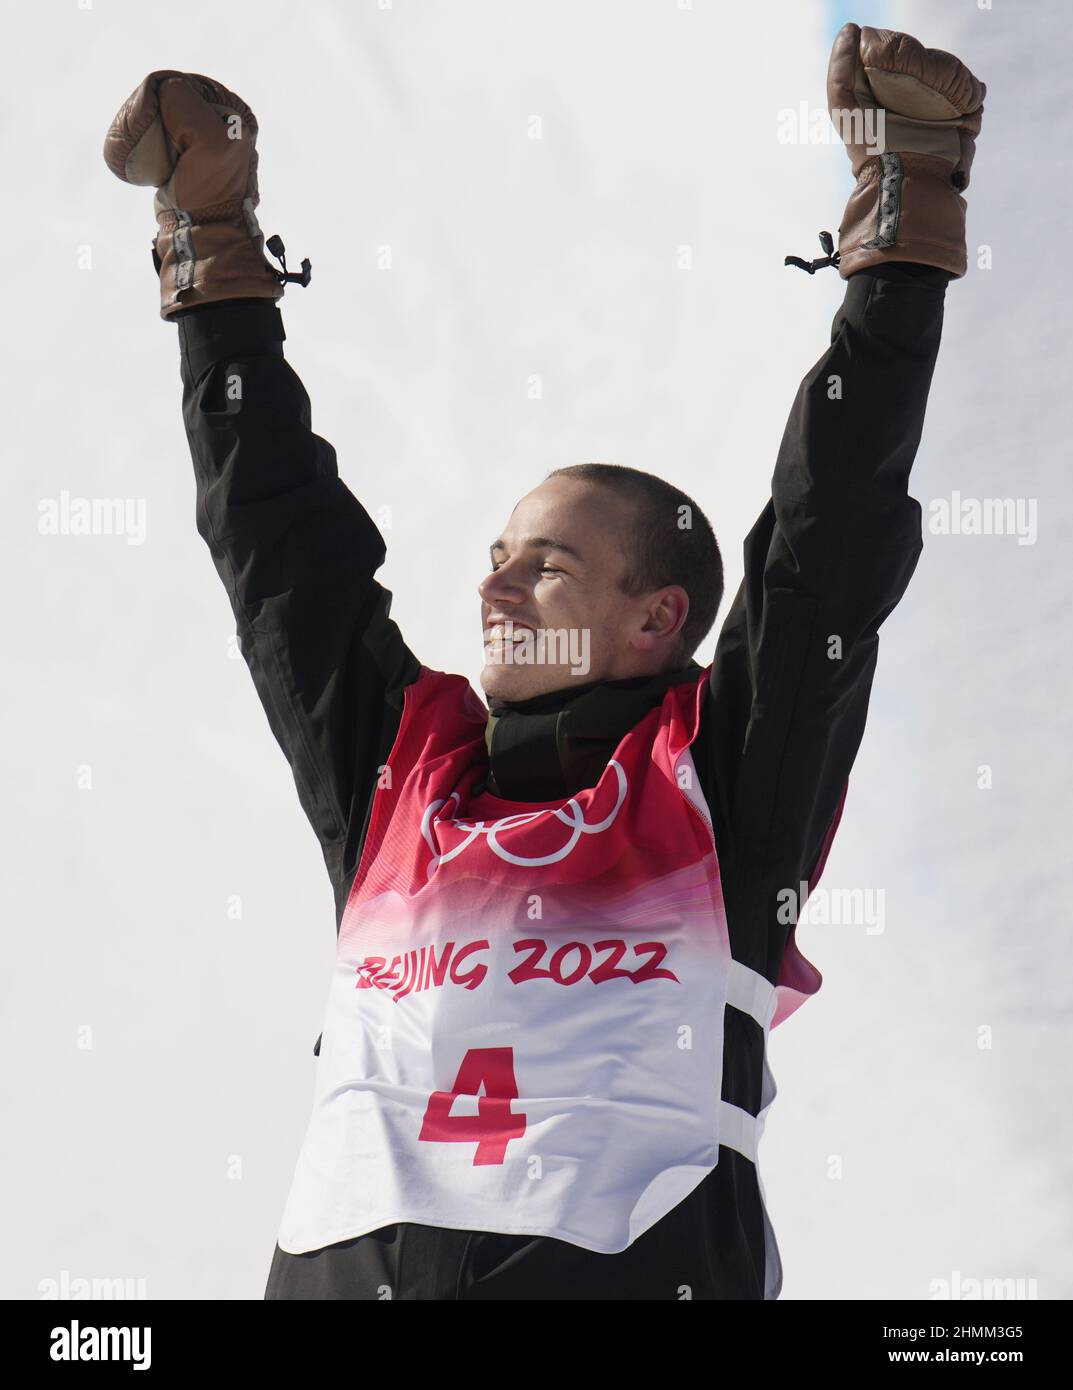 Zhangjiakou, China. 11th Feb, 2022. El medallista de bronce Jan Scherrer, de Suiza, se encuentra en el podio después de la final de Halfpipe de snowboard masculina en los Juegos Olímpicos de Invierno de 2022 en Zhangjiakou, China, el viernes 11 de febrero de 2022. El japonés Ayumu Hirano ganó la medalla de oro y el australiano Scotty James ganó la medalla de plata. Foto de Bob Strong/UPI . Crédito: UPI/Alamy Live News Foto de stock